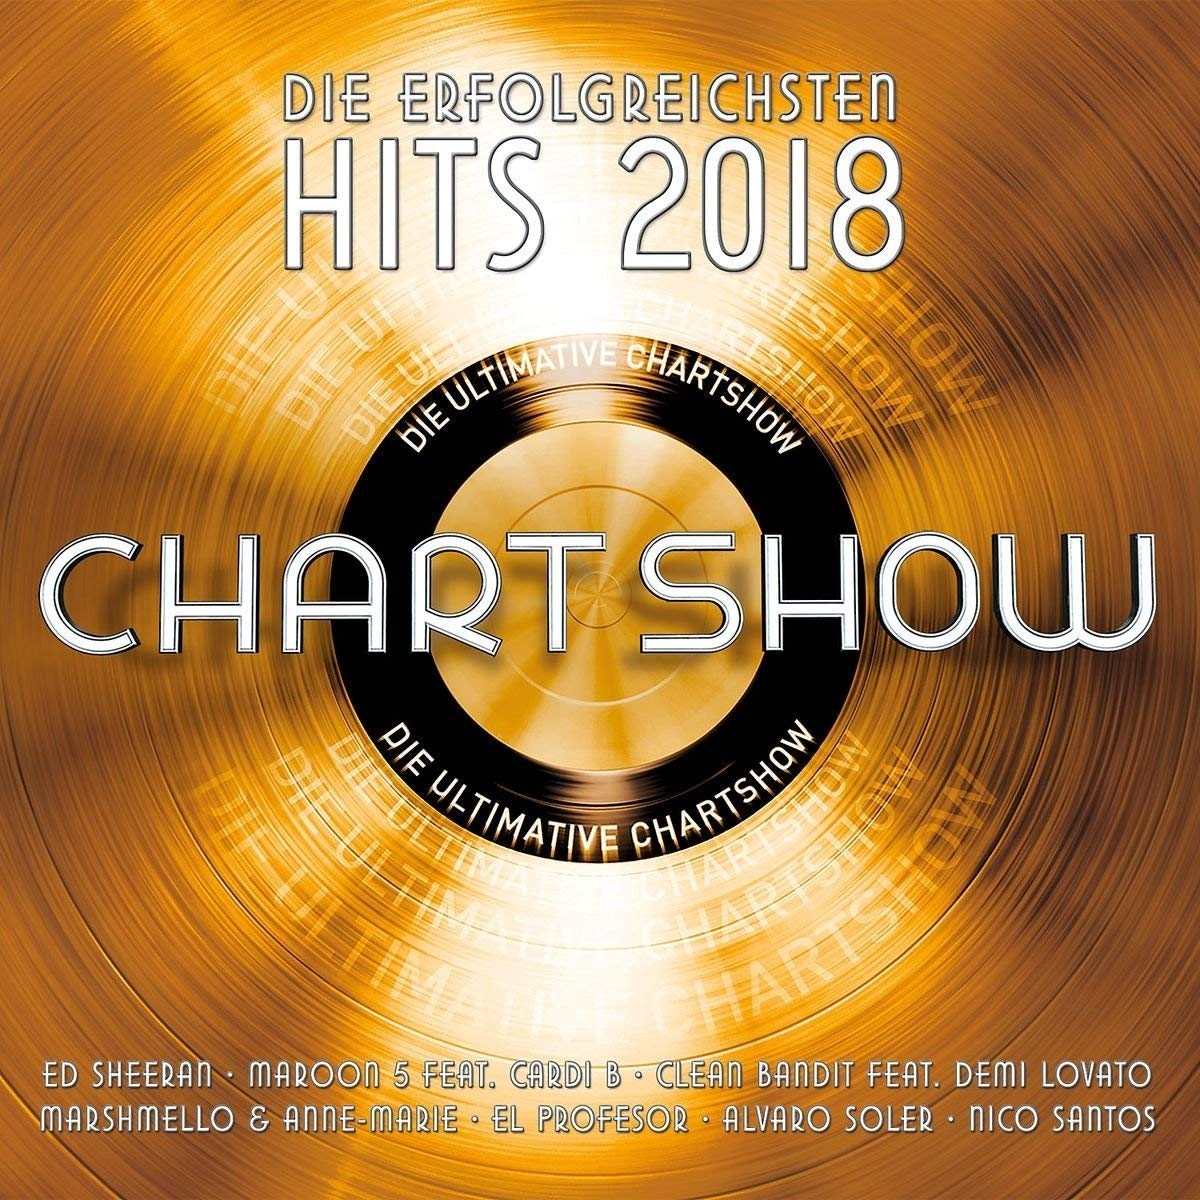 "Die ultimative Chart Show" am 07.12. mit Andreas Gabalier und Ben Zucker